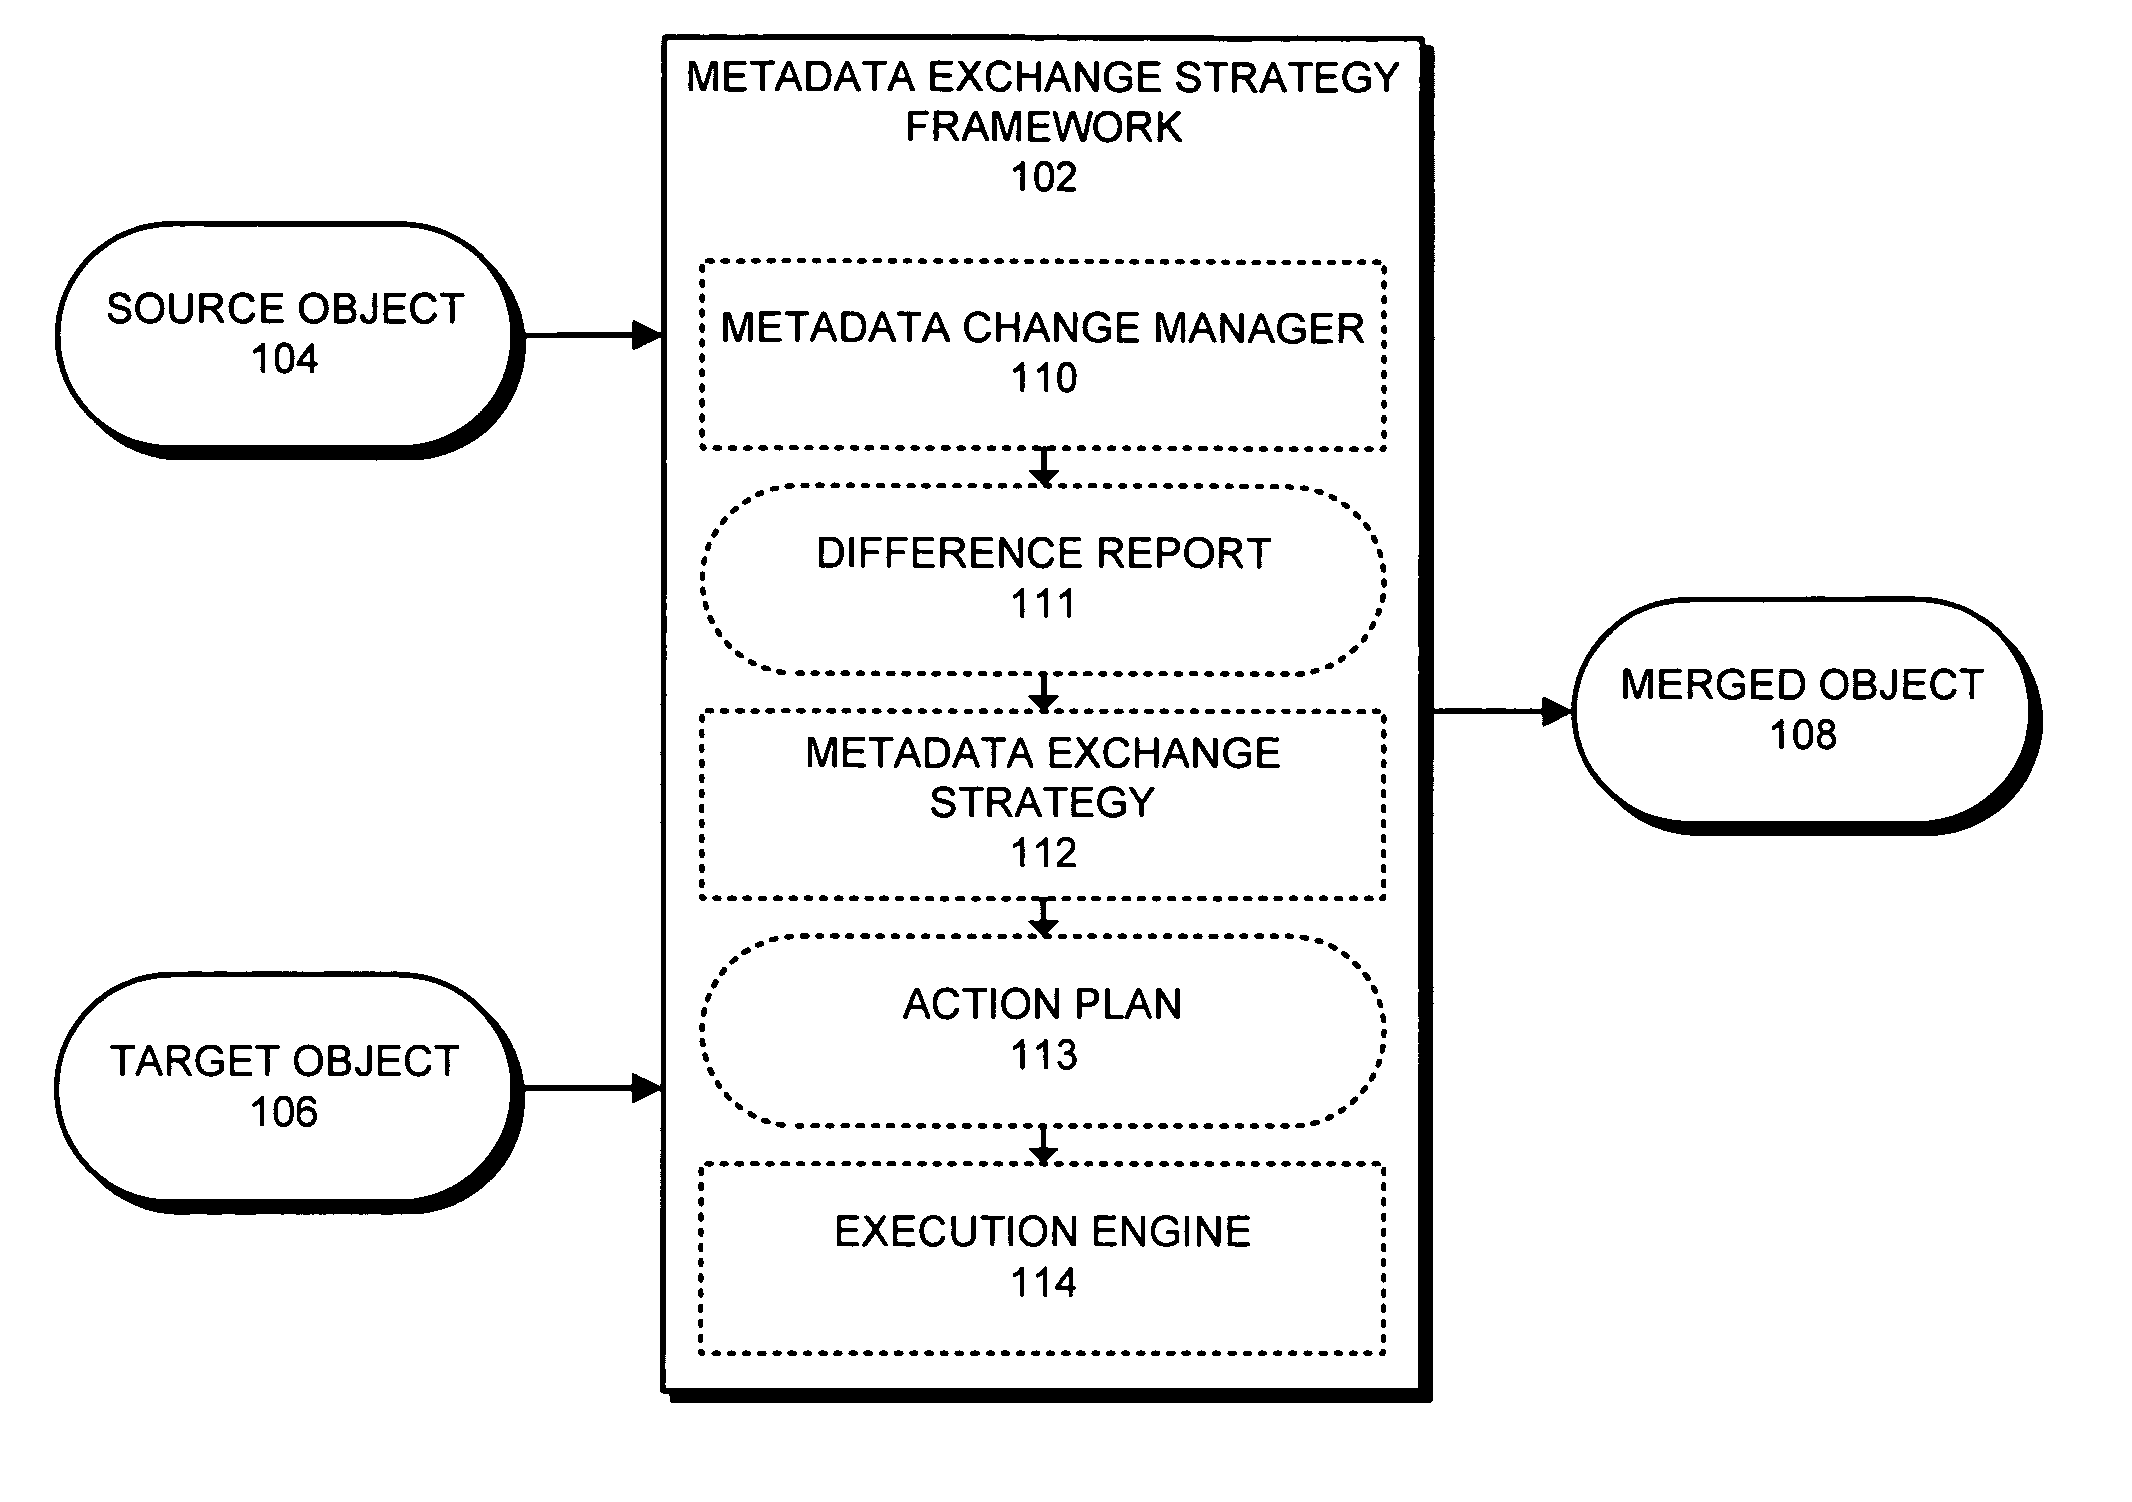 Customizable metadata merging framework